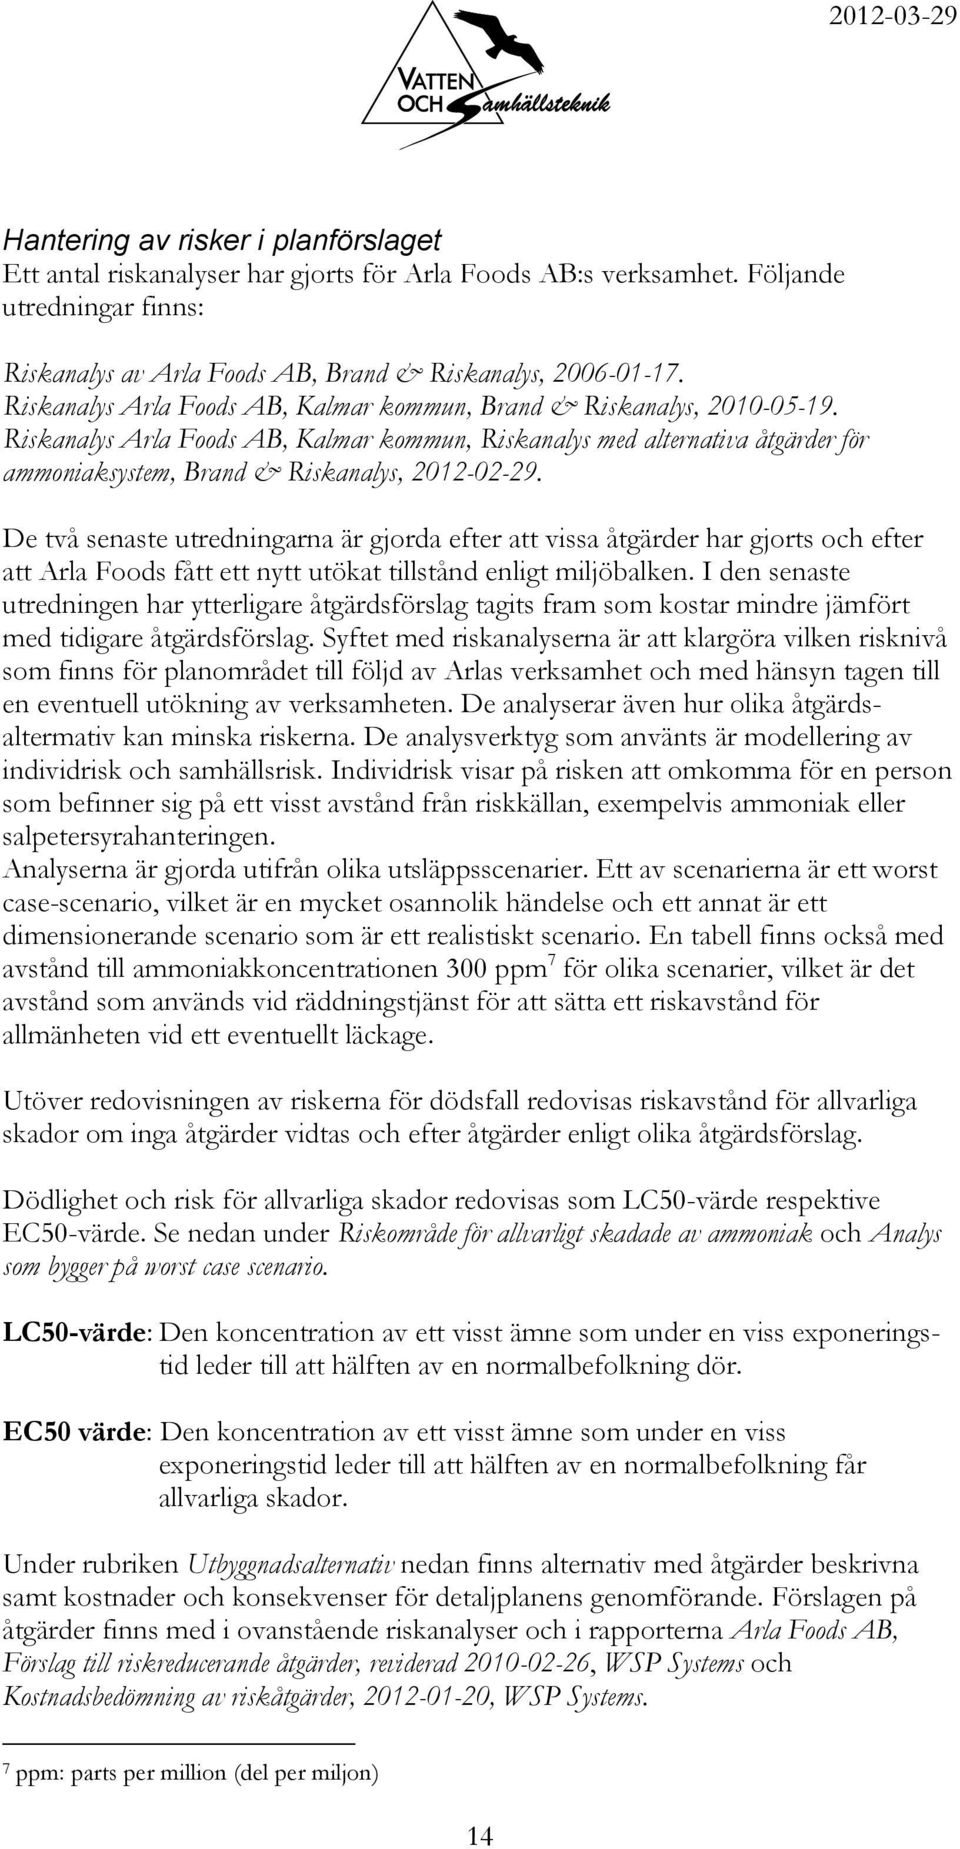 Riskanalys Arla Foods AB, Kalmar kommun, Riskanalys med alternativa åtgärder för ammoniaksystem, Brand & Riskanalys, 2012-02-29.